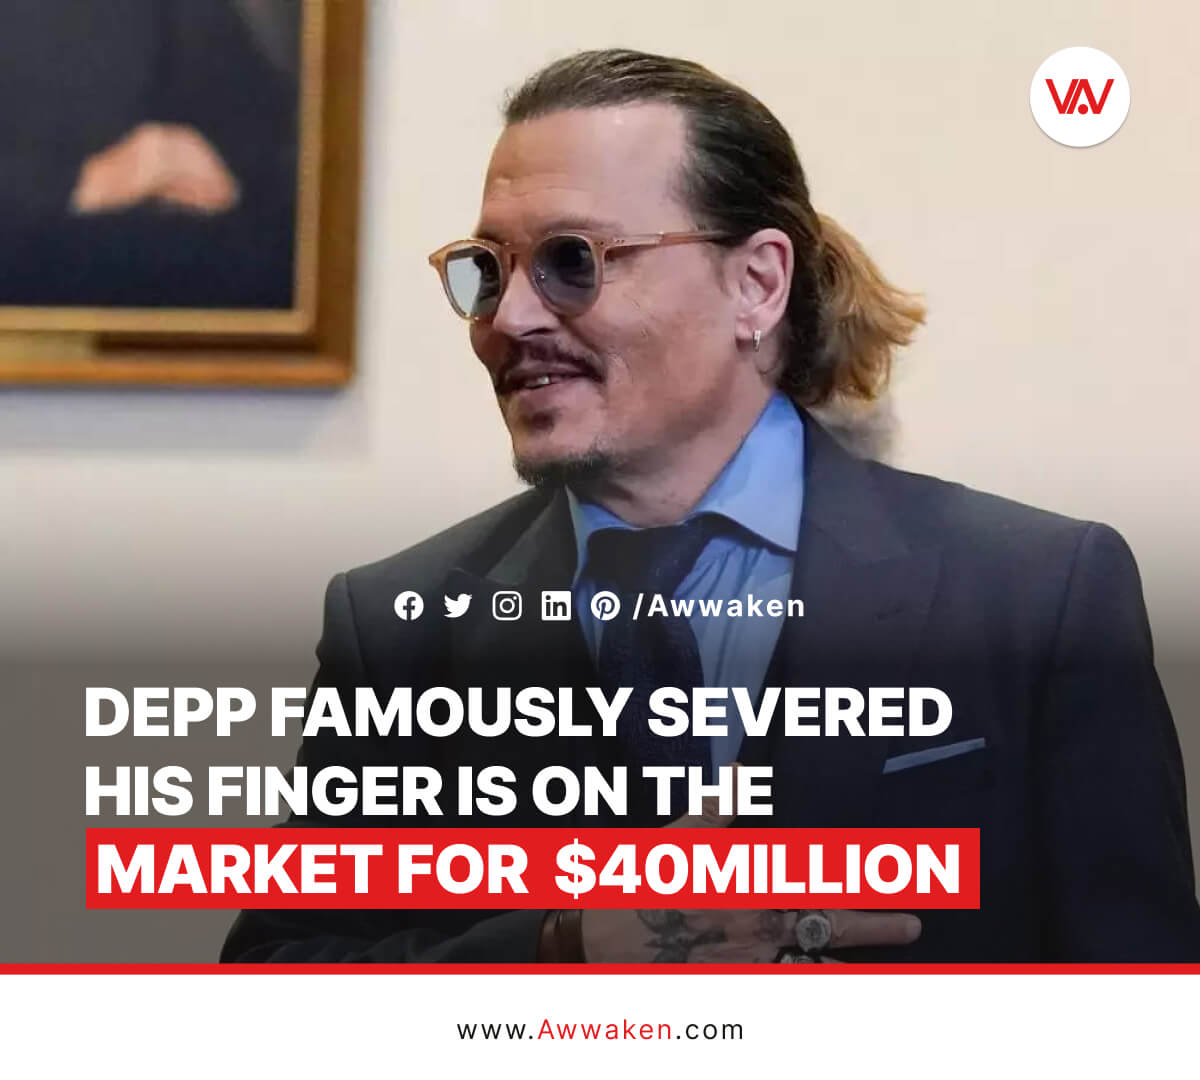 Johnny Depp famously severed his finger for $40million_awwaken